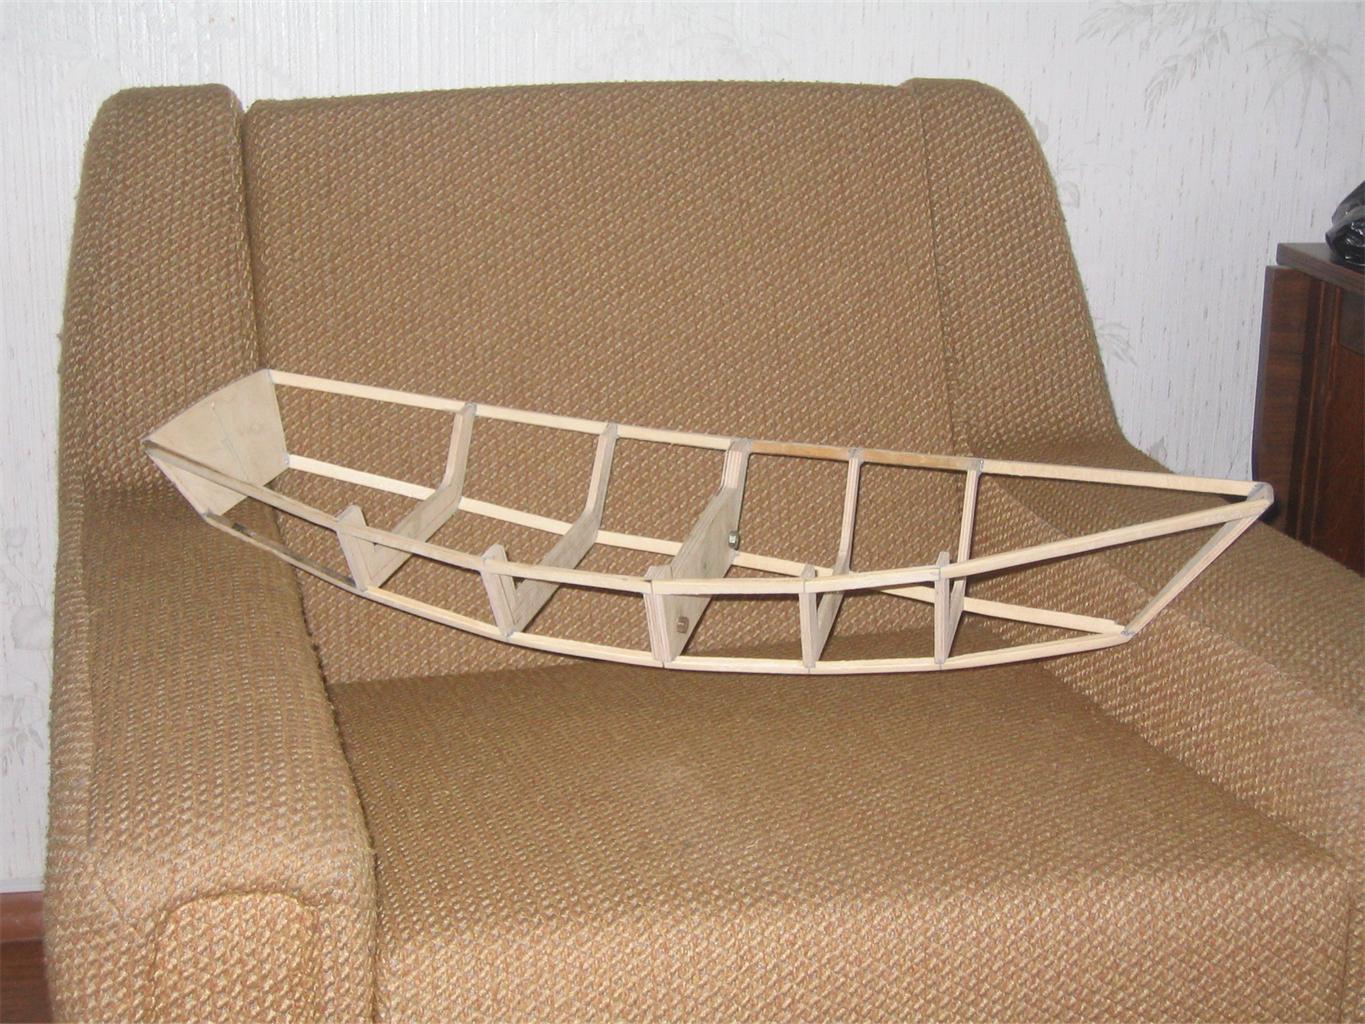 Материалы для изготовления лодки